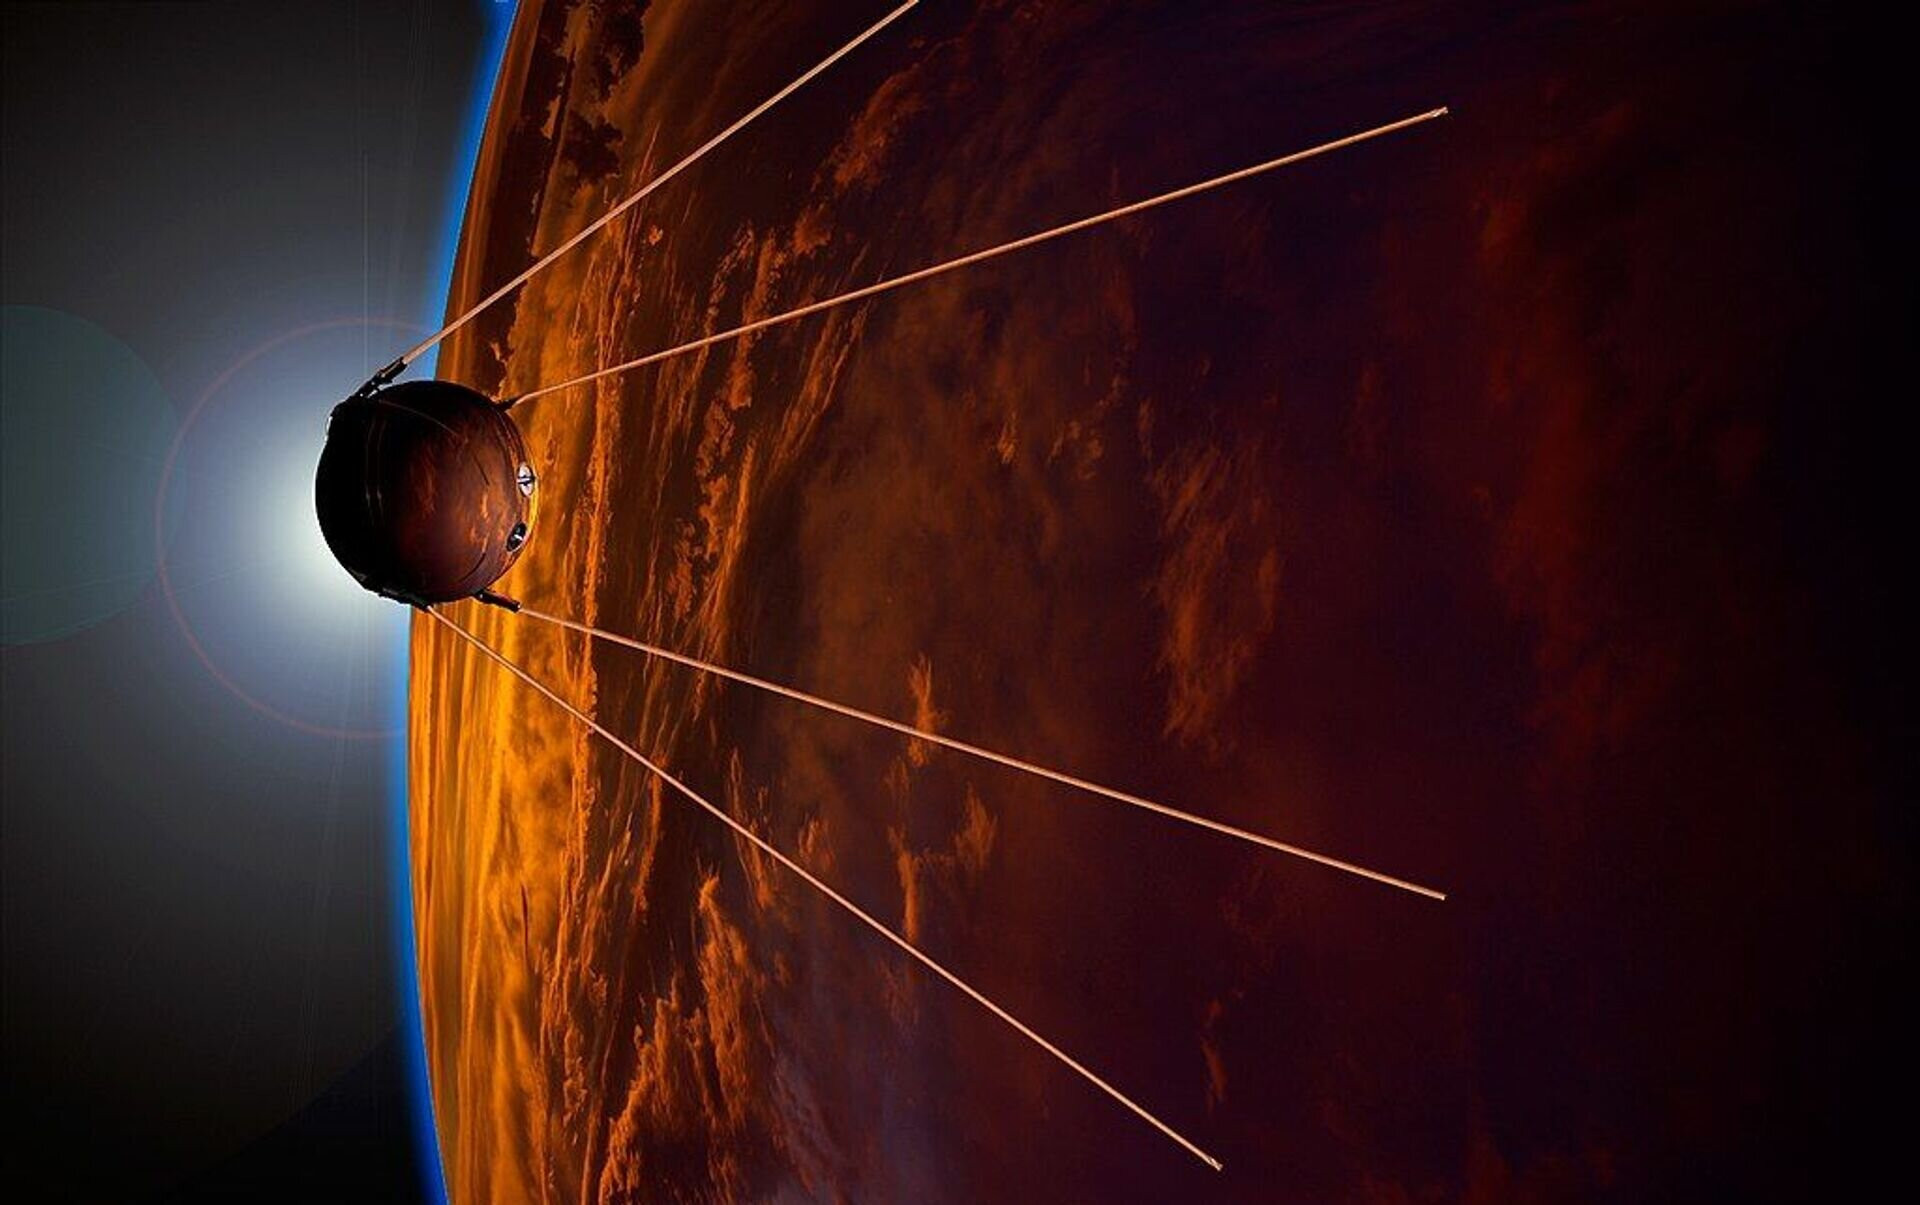 Sputnik 1 là vật thể nhân tạo đầu tiên trên thế giới bay quanh Trái Đất. Nó được phóng từ sân bay vũ trụ Baikonur của Liên Xô, đi vào quỹ đạo thấp của Trái Đất vào ngày 4/10/1957. Sputnik quay quanh Trái đất 1.440 lần, ở trên quỹ đạo thấp cho đến ngày 4/1/1958 thì bốc cháy, khi quay trở lại bầu khí quyển Trái Đất. Về cơ bản, Sputnik 1 giúp nhân loại tìm hiểu về các đặc tính bầu khí quyển Trái Đất. (Ảnh: Google)